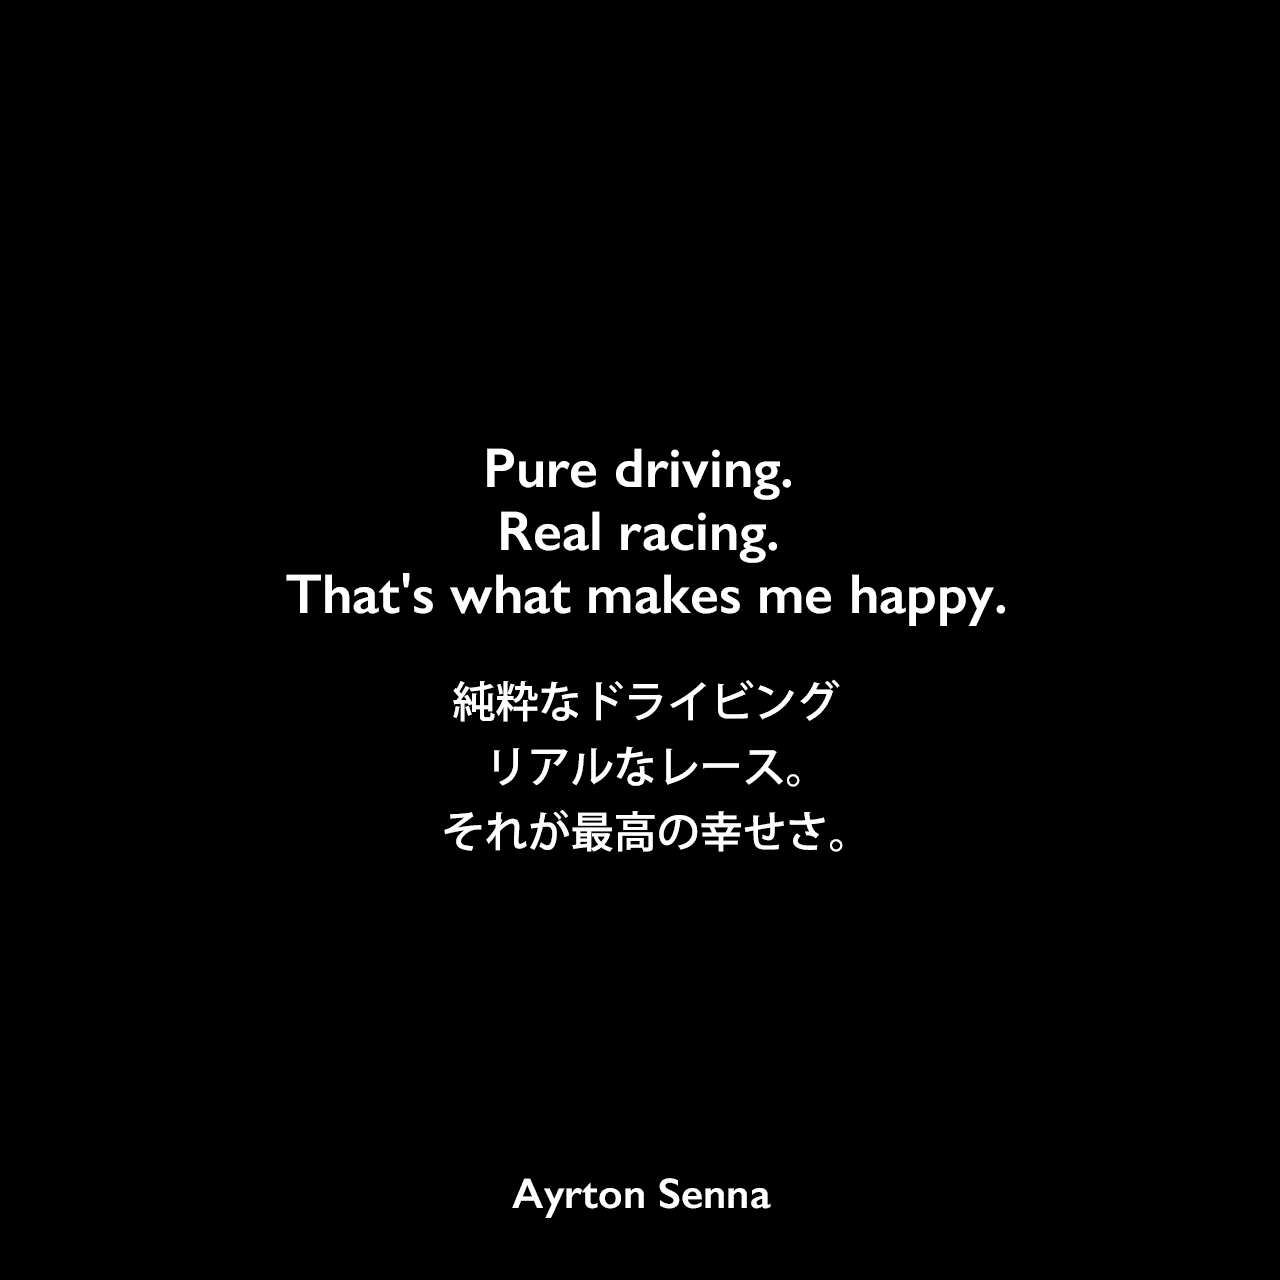 Pure driving. Real racing. That's what makes me happy.純粋なドライビング、リアルなレース。それが最高の幸せさ。Ayrton Senna